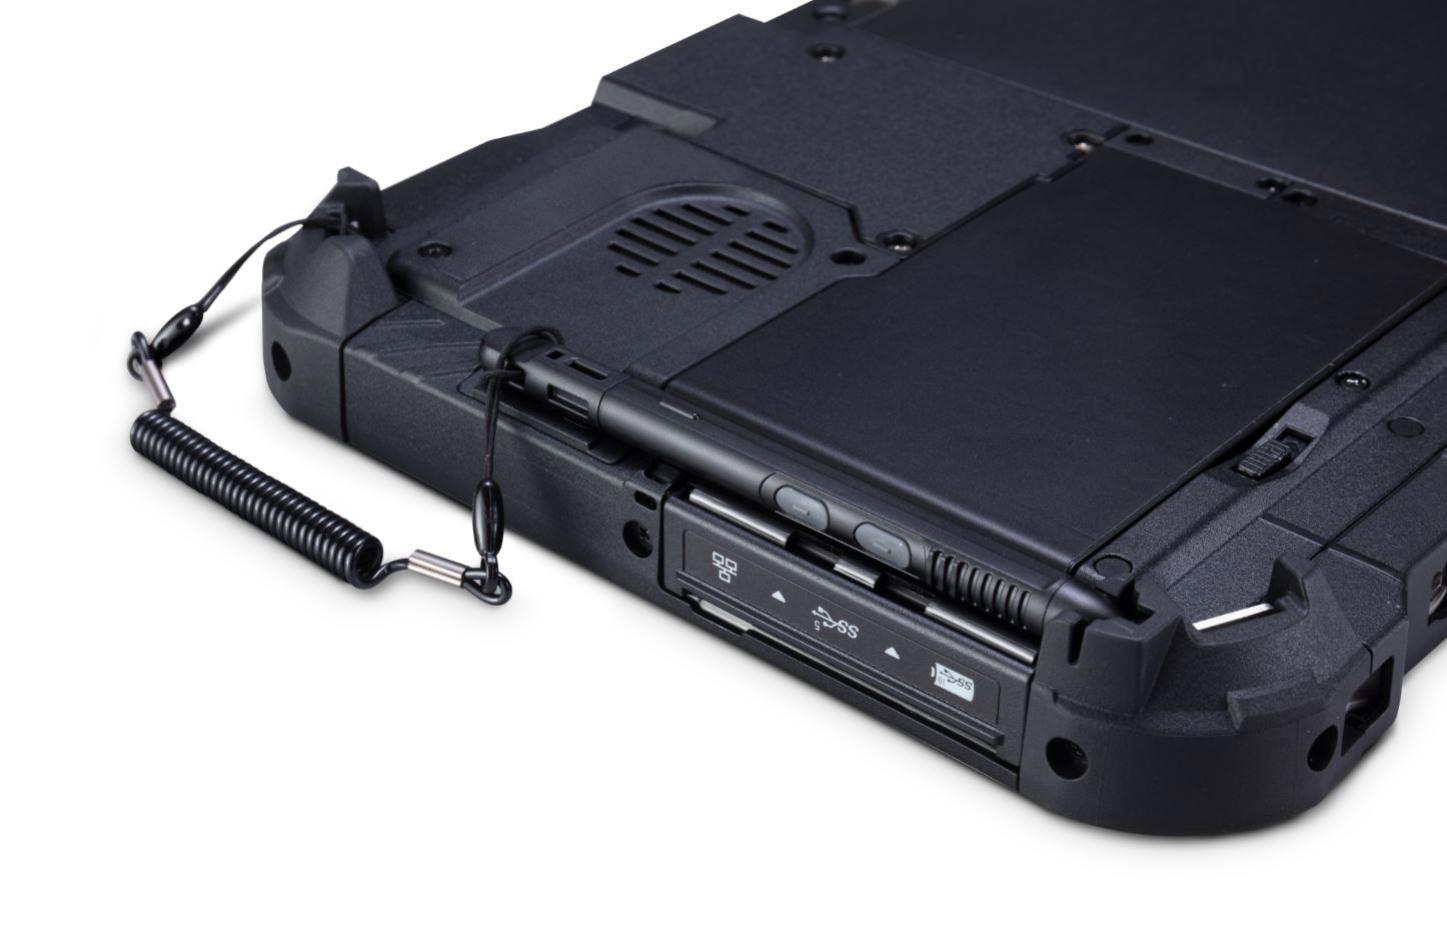 Panasonic Toughbook G2 Mk1 - Marknet Technology